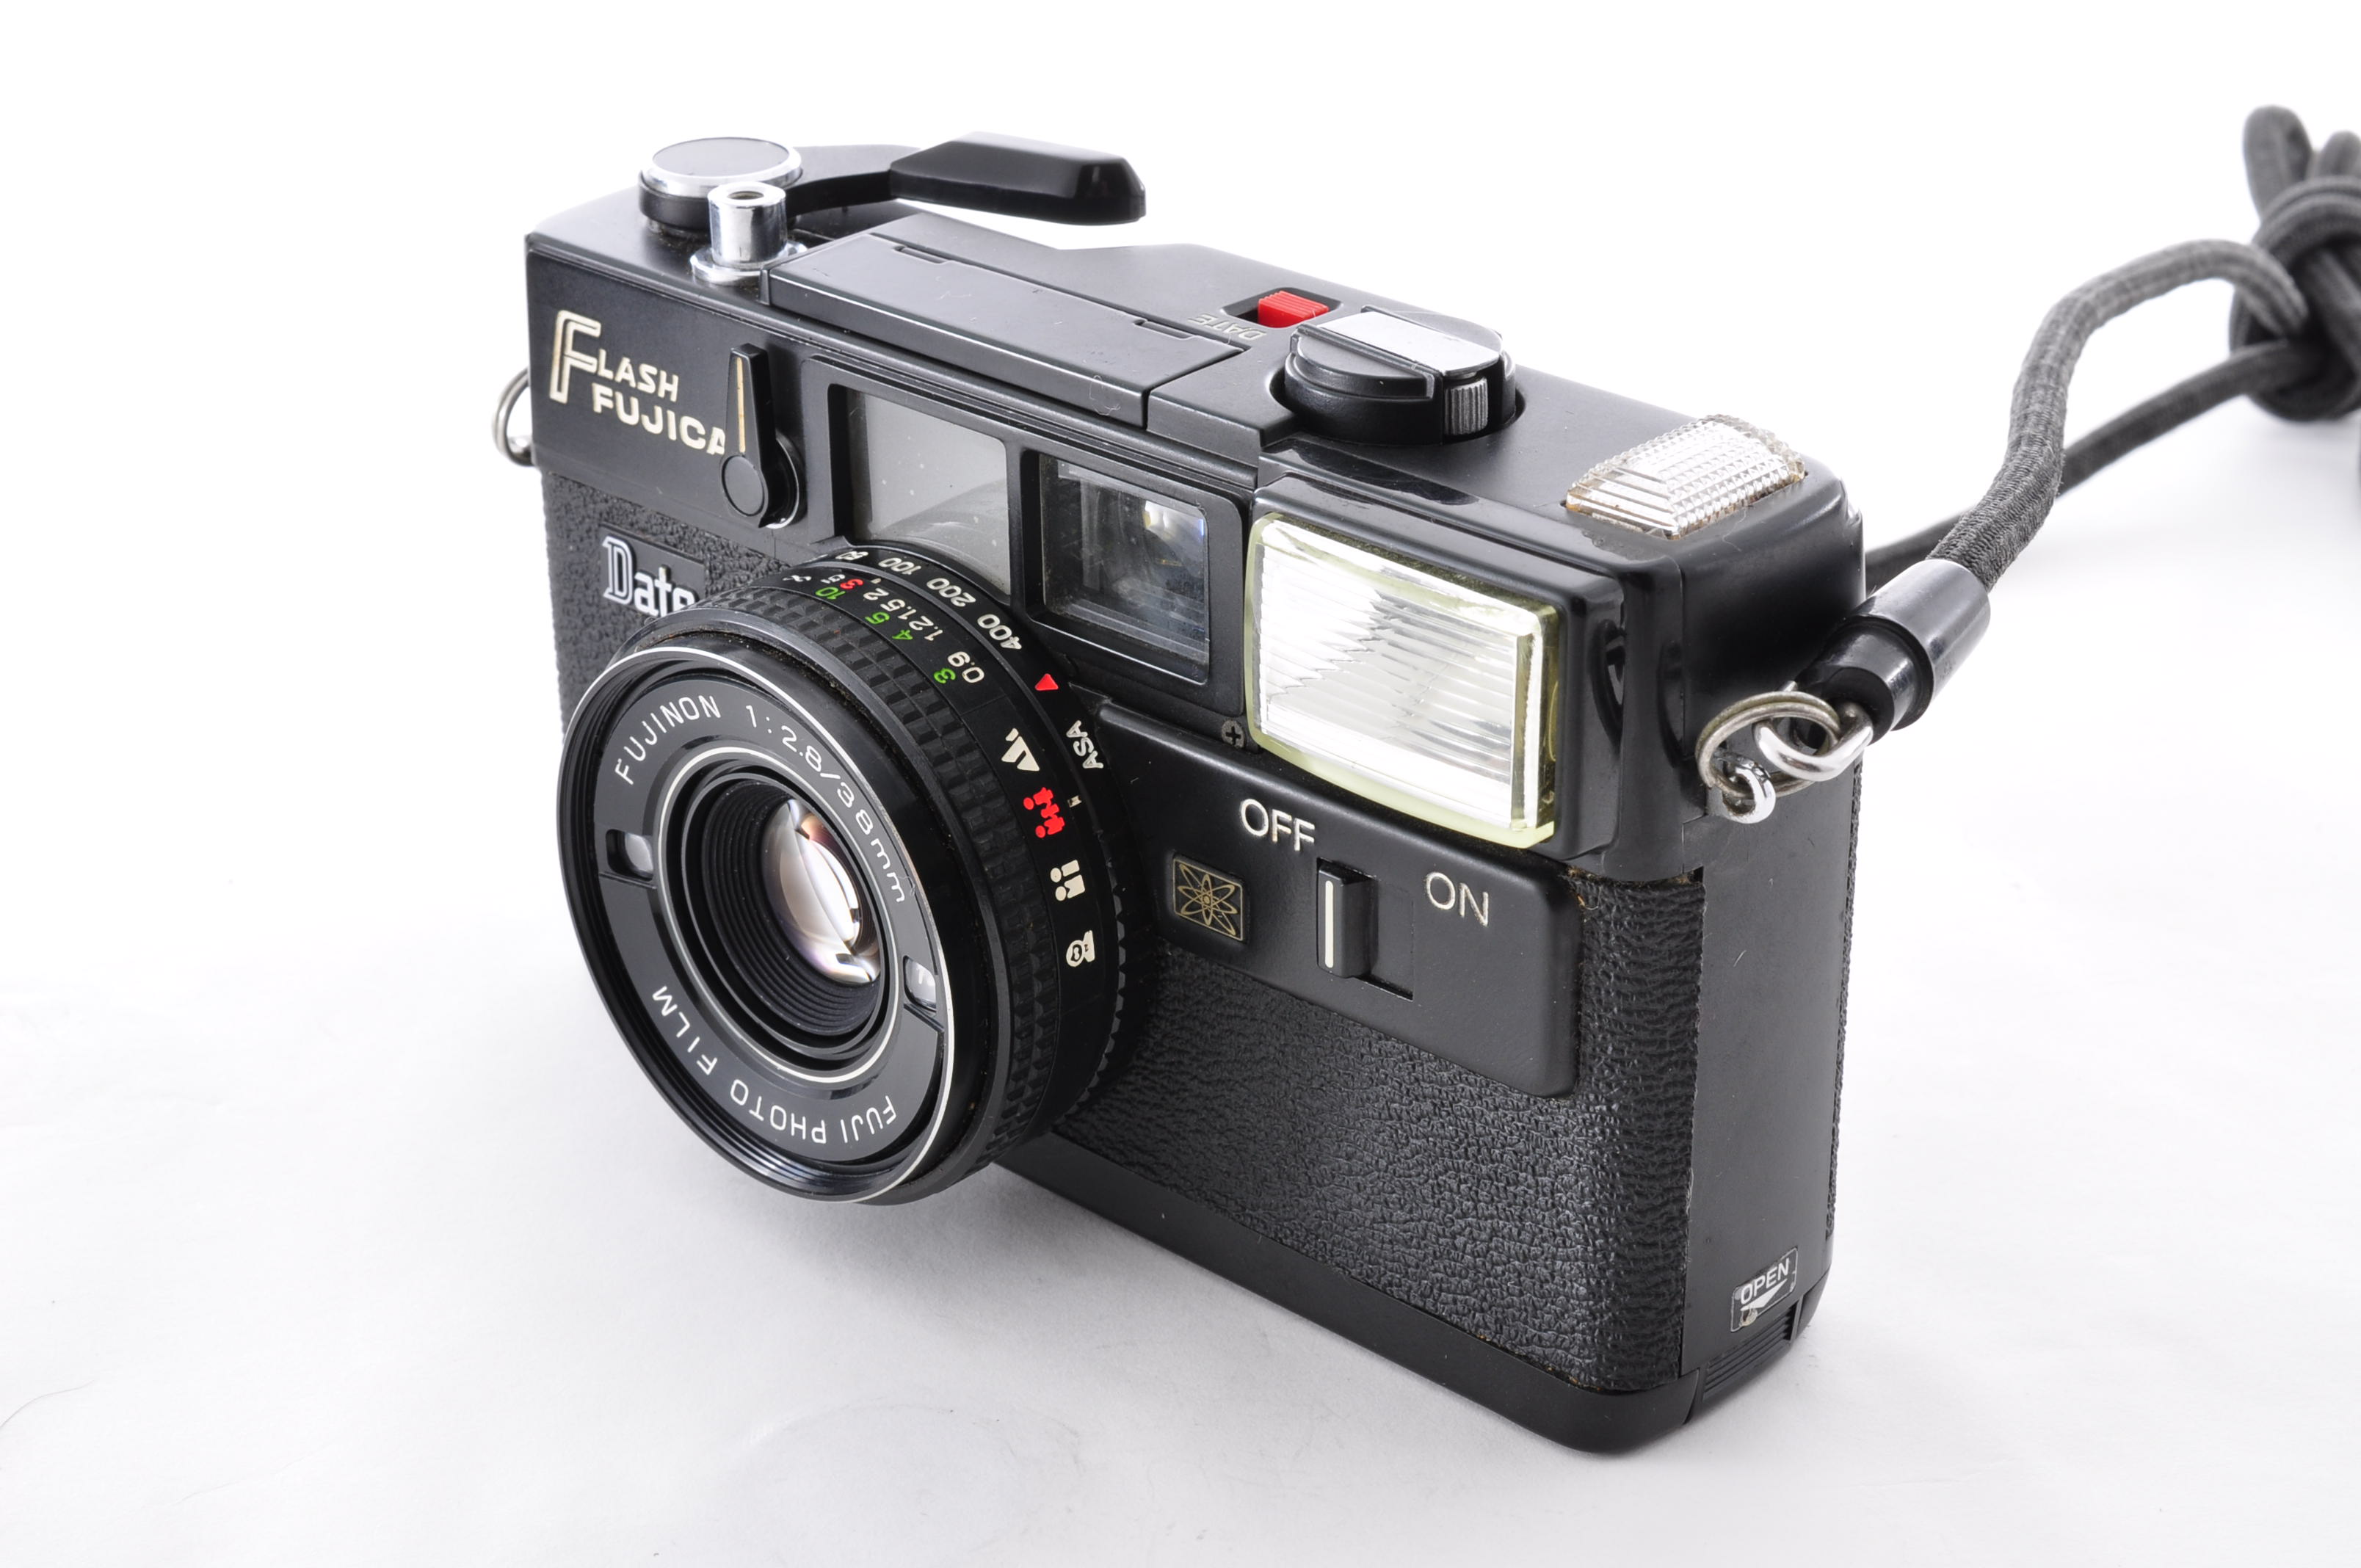 Fuji Fujifilm Flash Fujica Date Rangefinder 35mm Film Camera [Near MINT] JAPAN img02